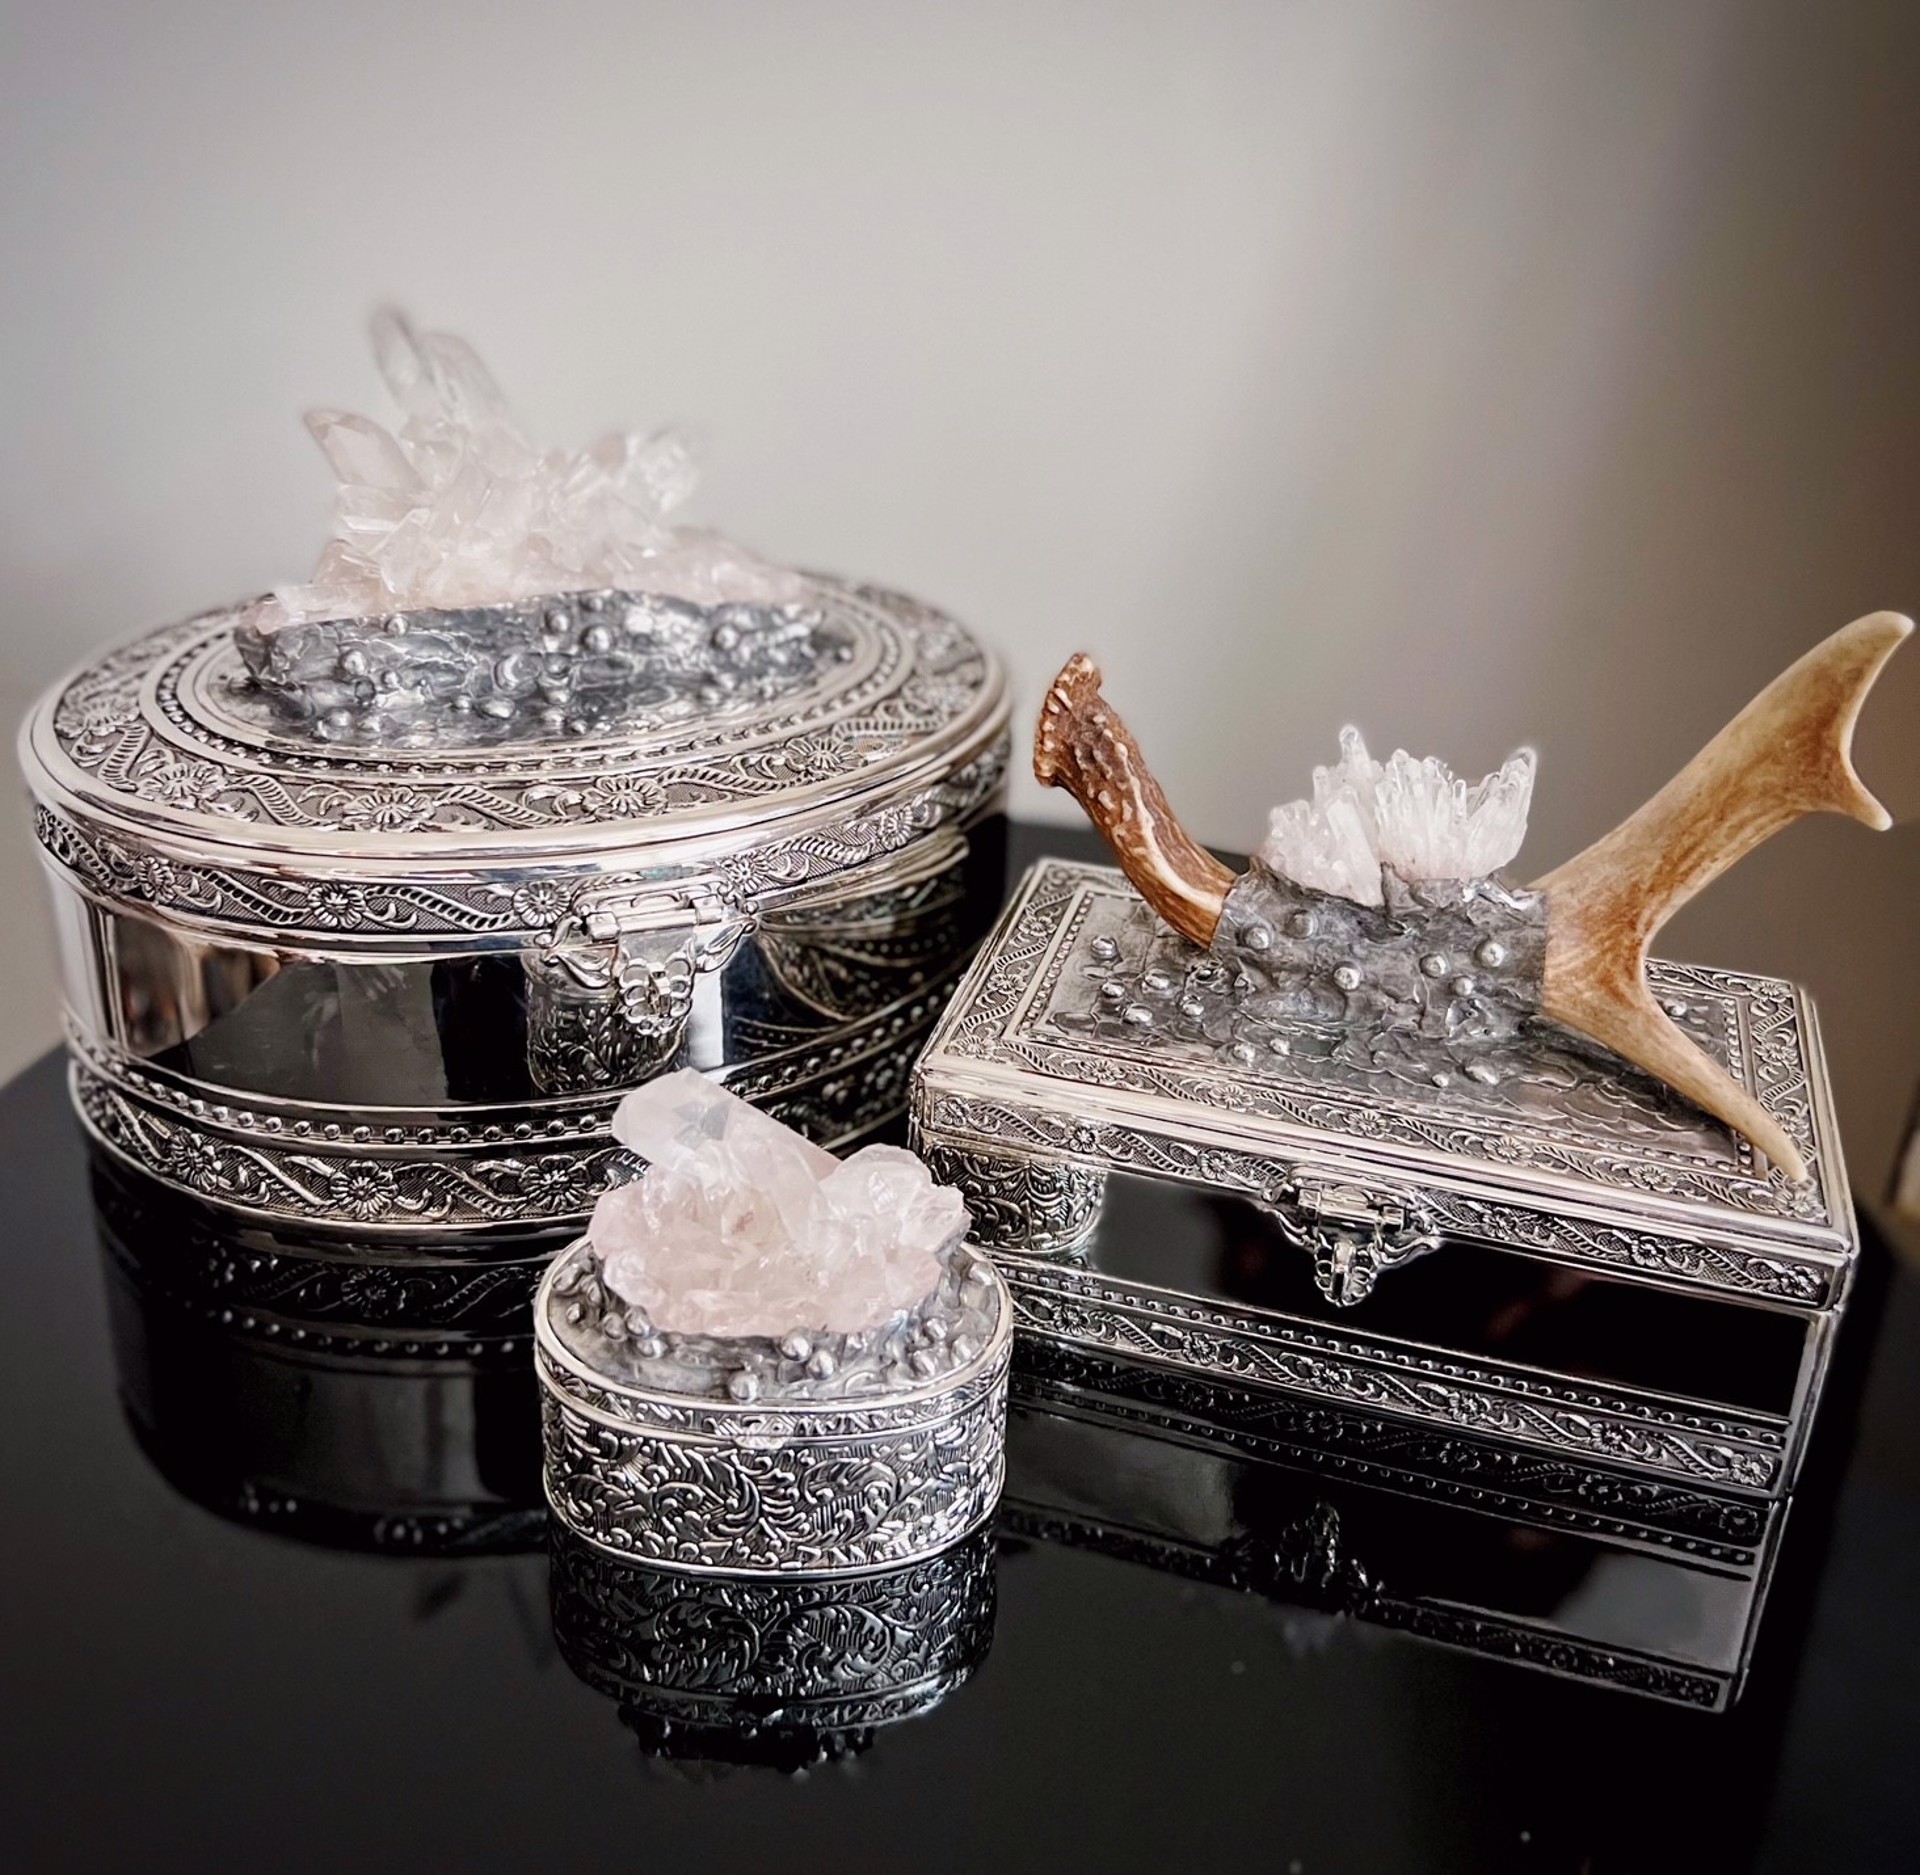 Large Jewelry Box with Quartz by Trinka 5 Designs